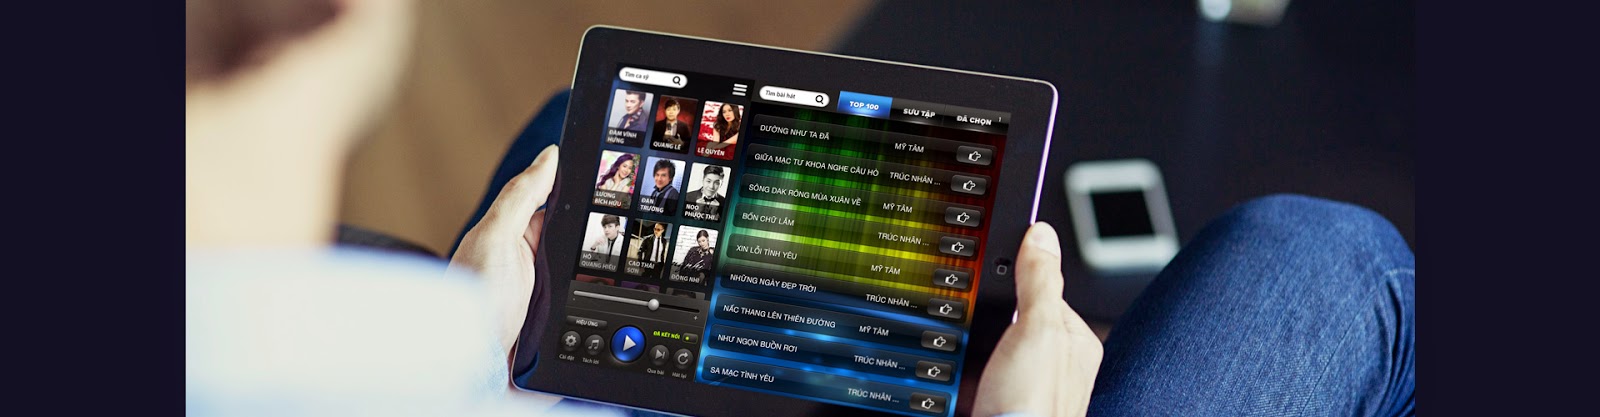 Đầu karaoke chọn bài hát bằng ipad, smatphone, màn hình cảm ứng giá rẻ